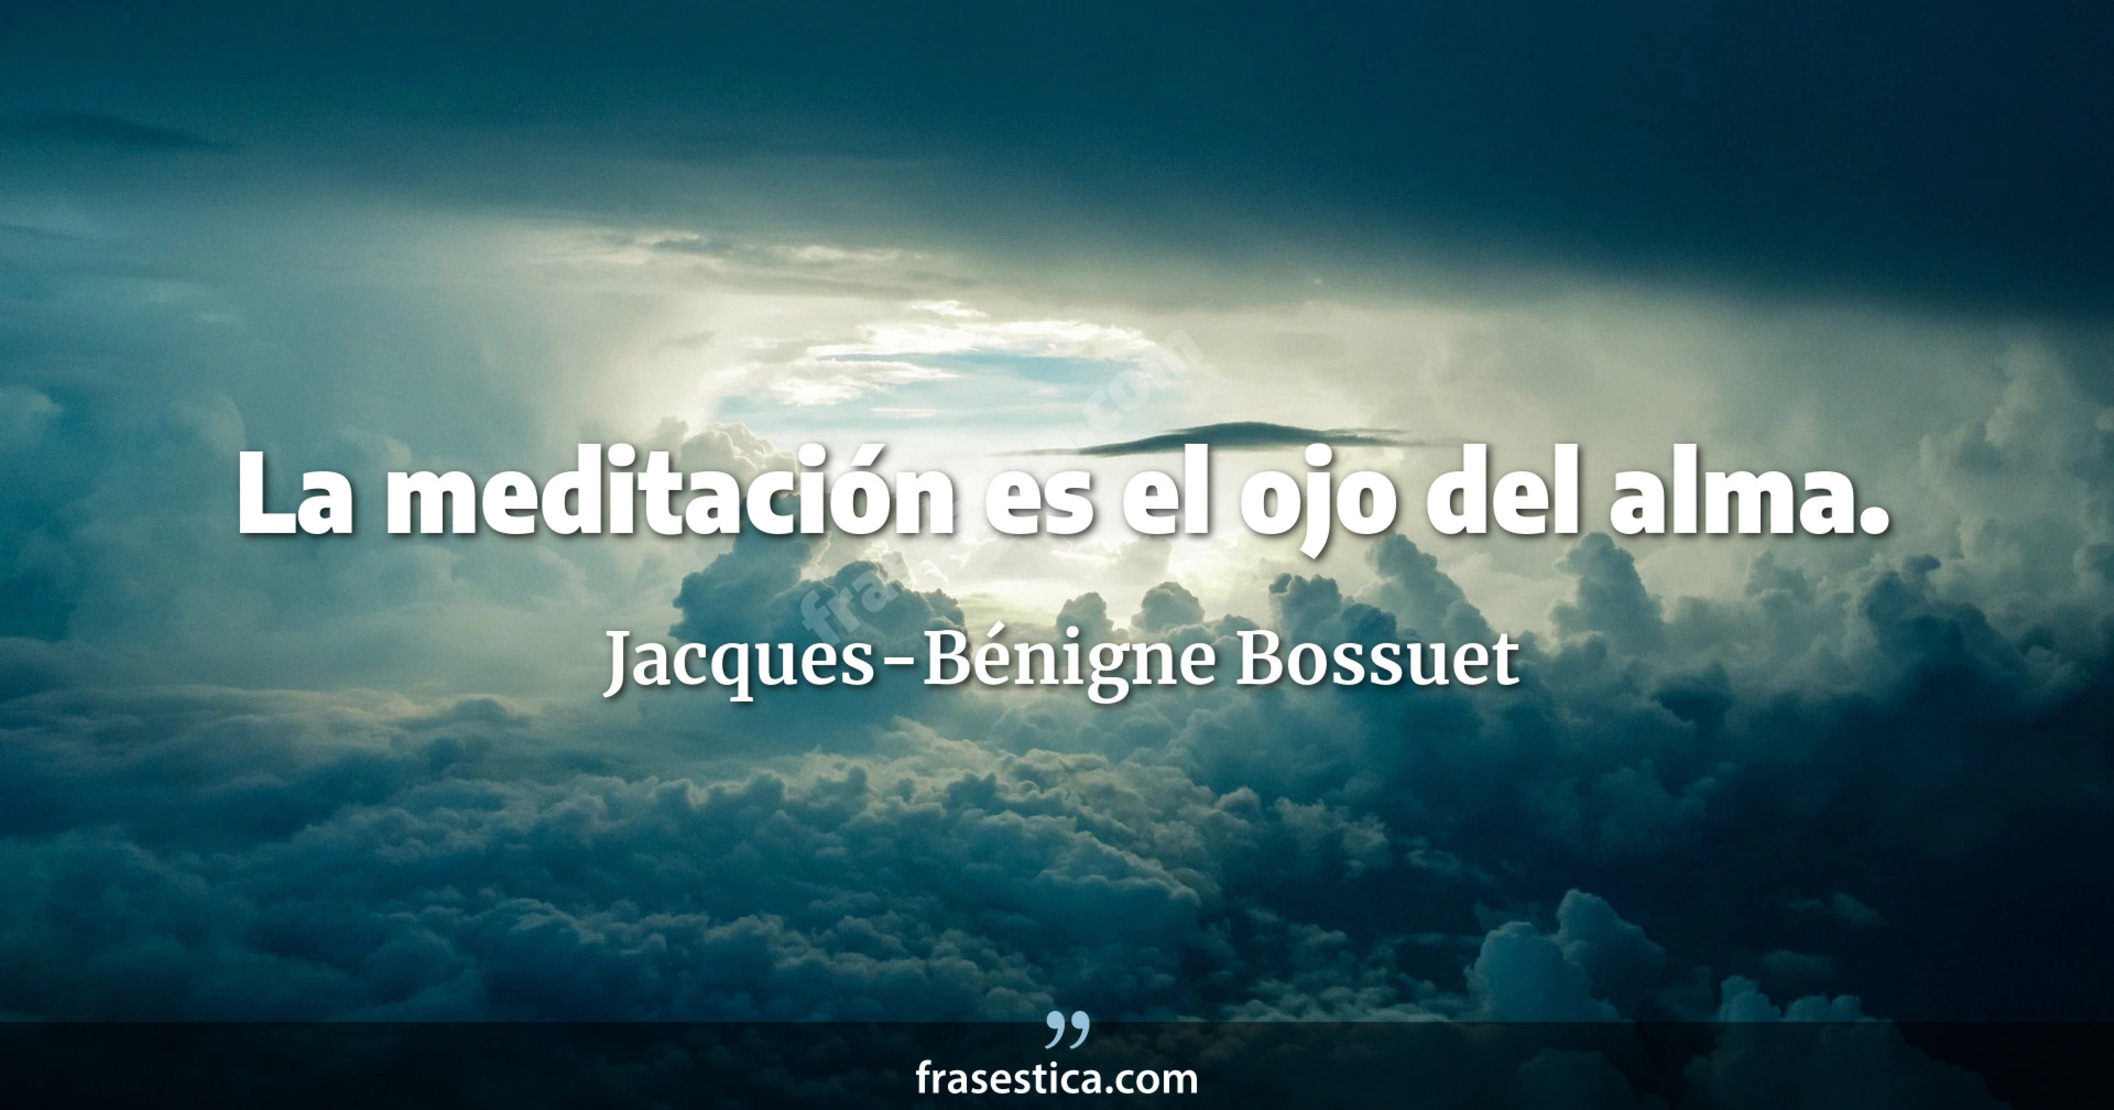 La meditación es el ojo del alma. - Jacques-Bénigne Bossuet